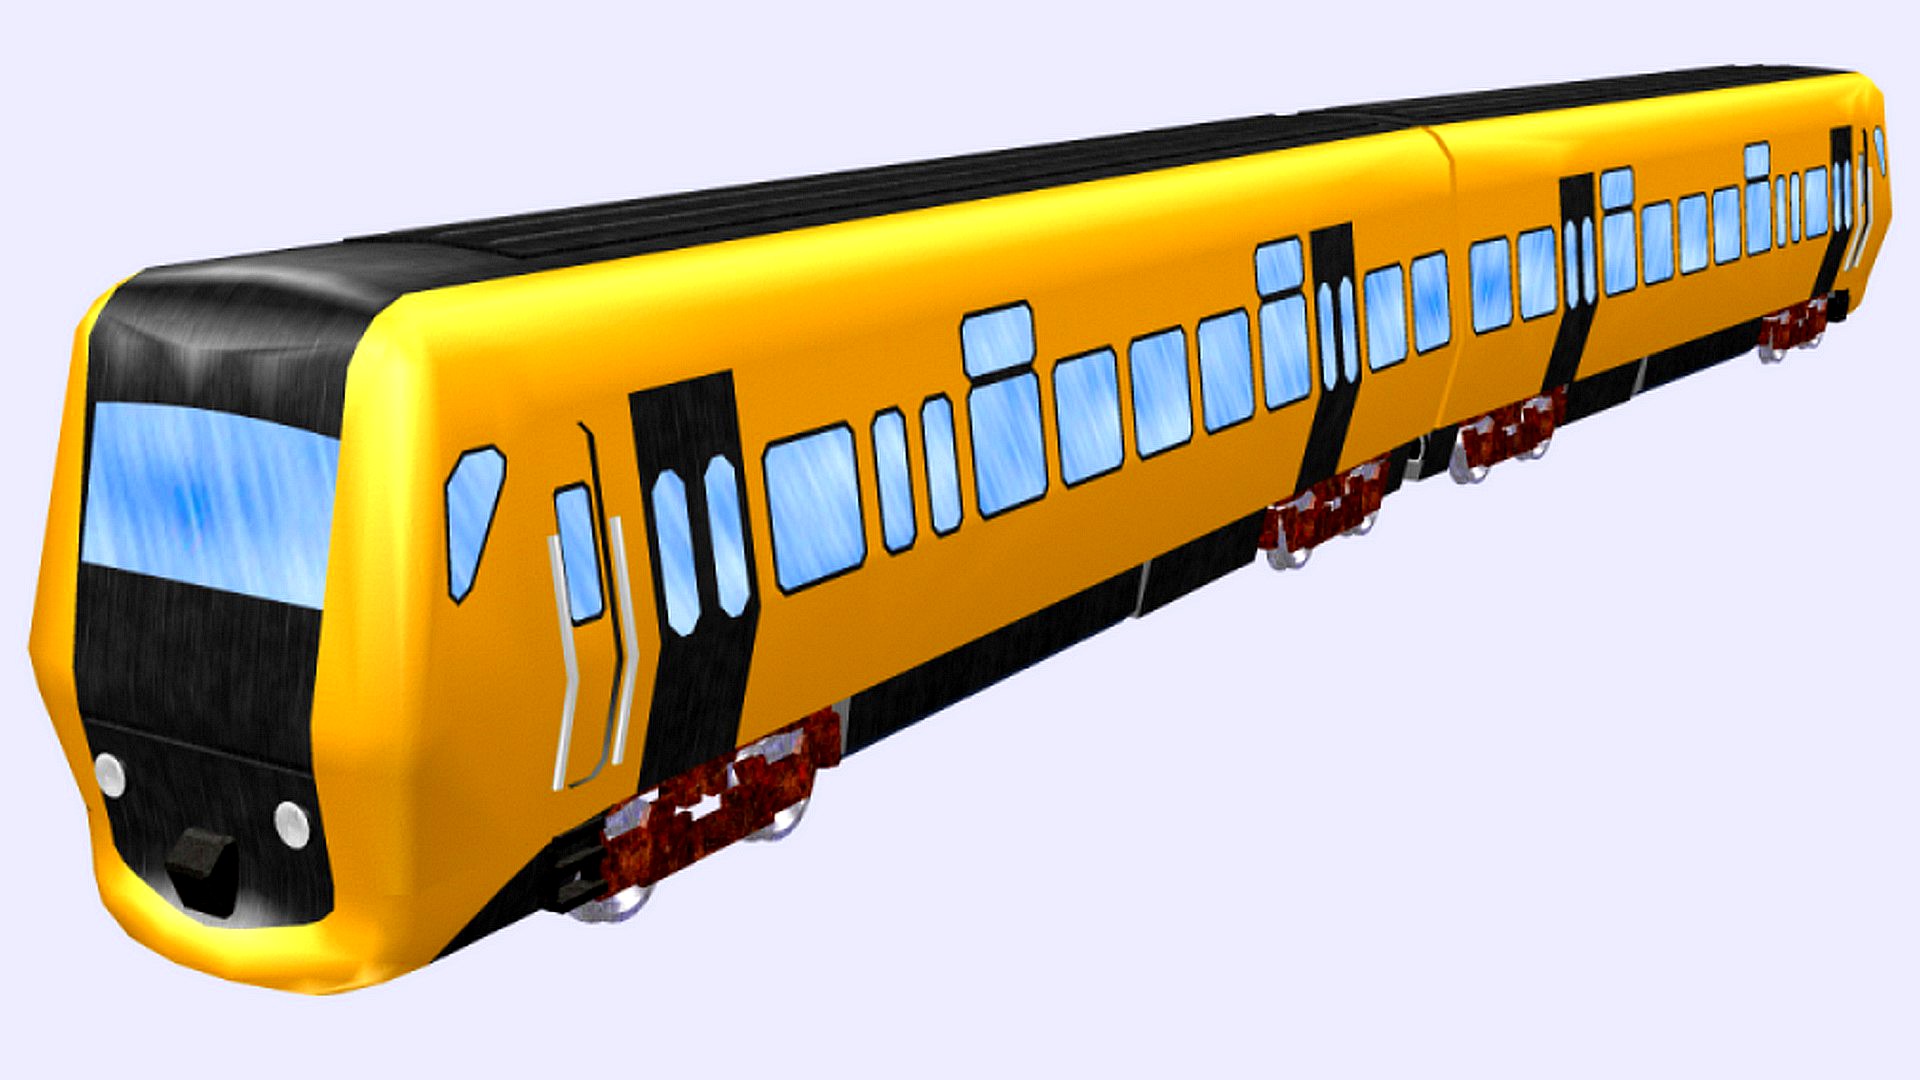 dm 90 class 4300 passenger train